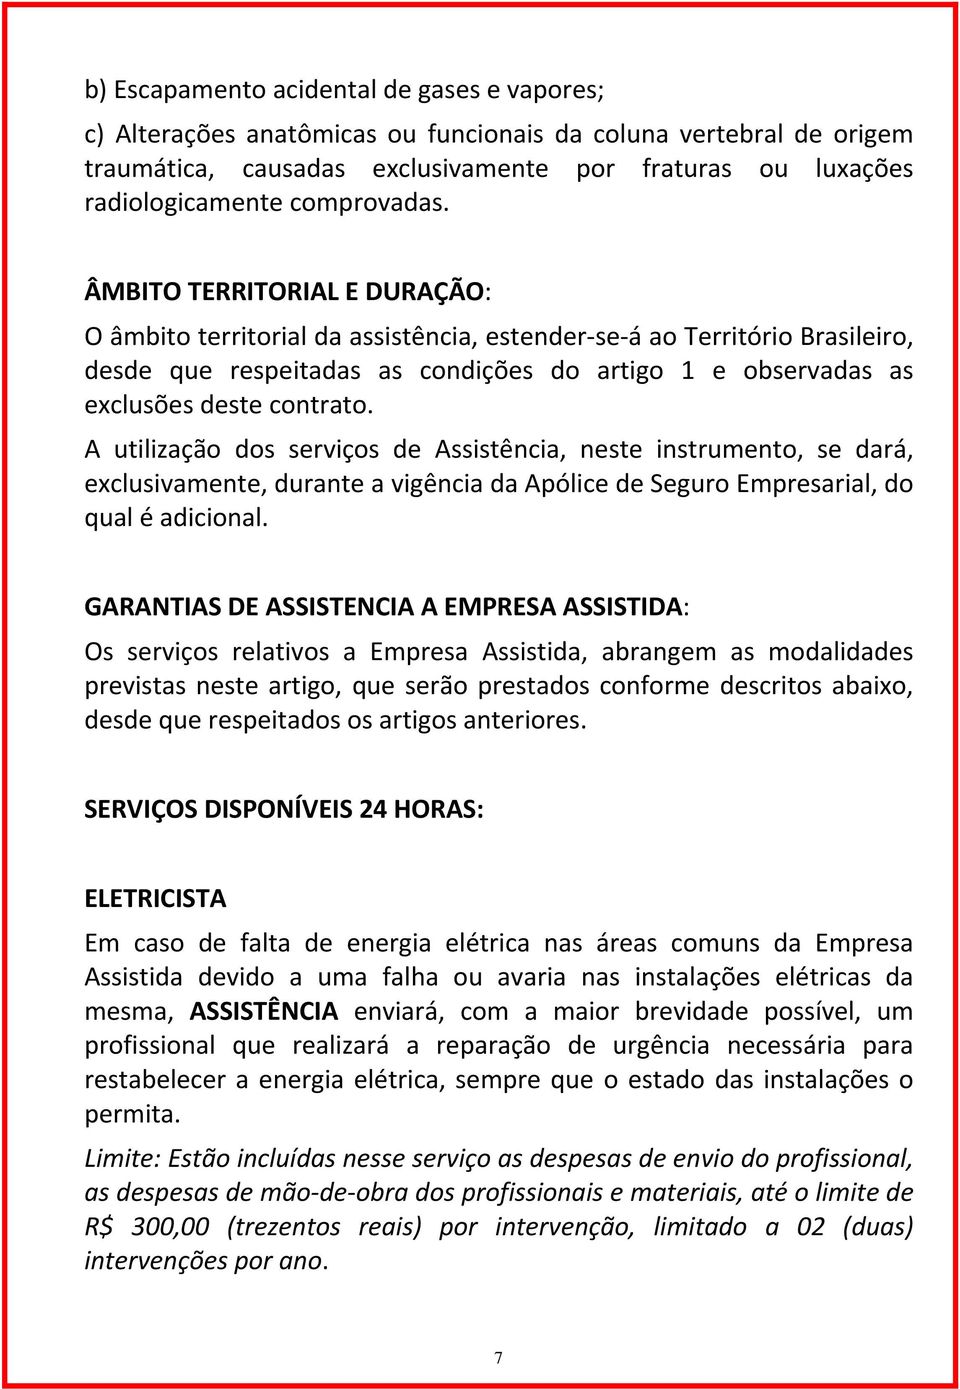 ÂMBITO TERRITORIAL E DURAÇÃO: O âmbito territorial da assistência, estender se á ao Território Brasileiro, desde que respeitadas as condições do artigo 1 e observadas as exclusões deste contrato.